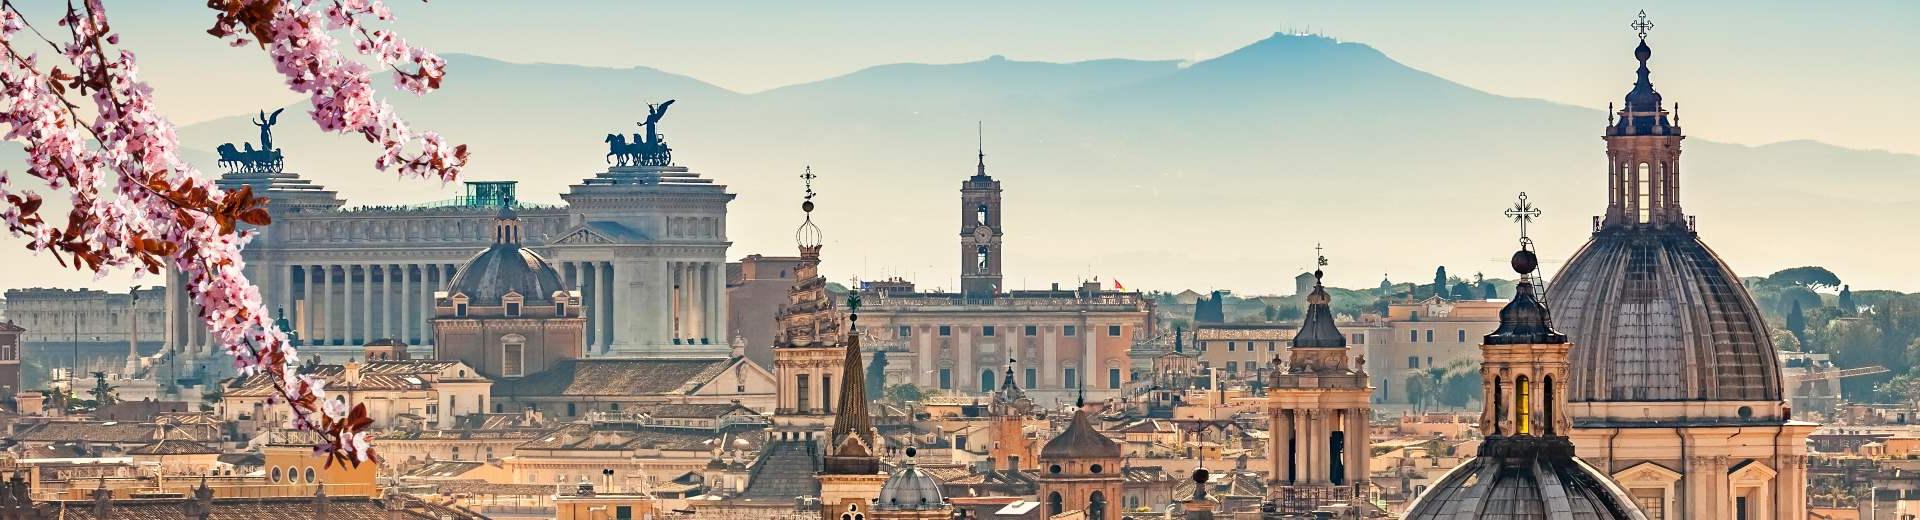 Znajdź najlepsze noclegi i apartamenty w Rzymie - Casamundo